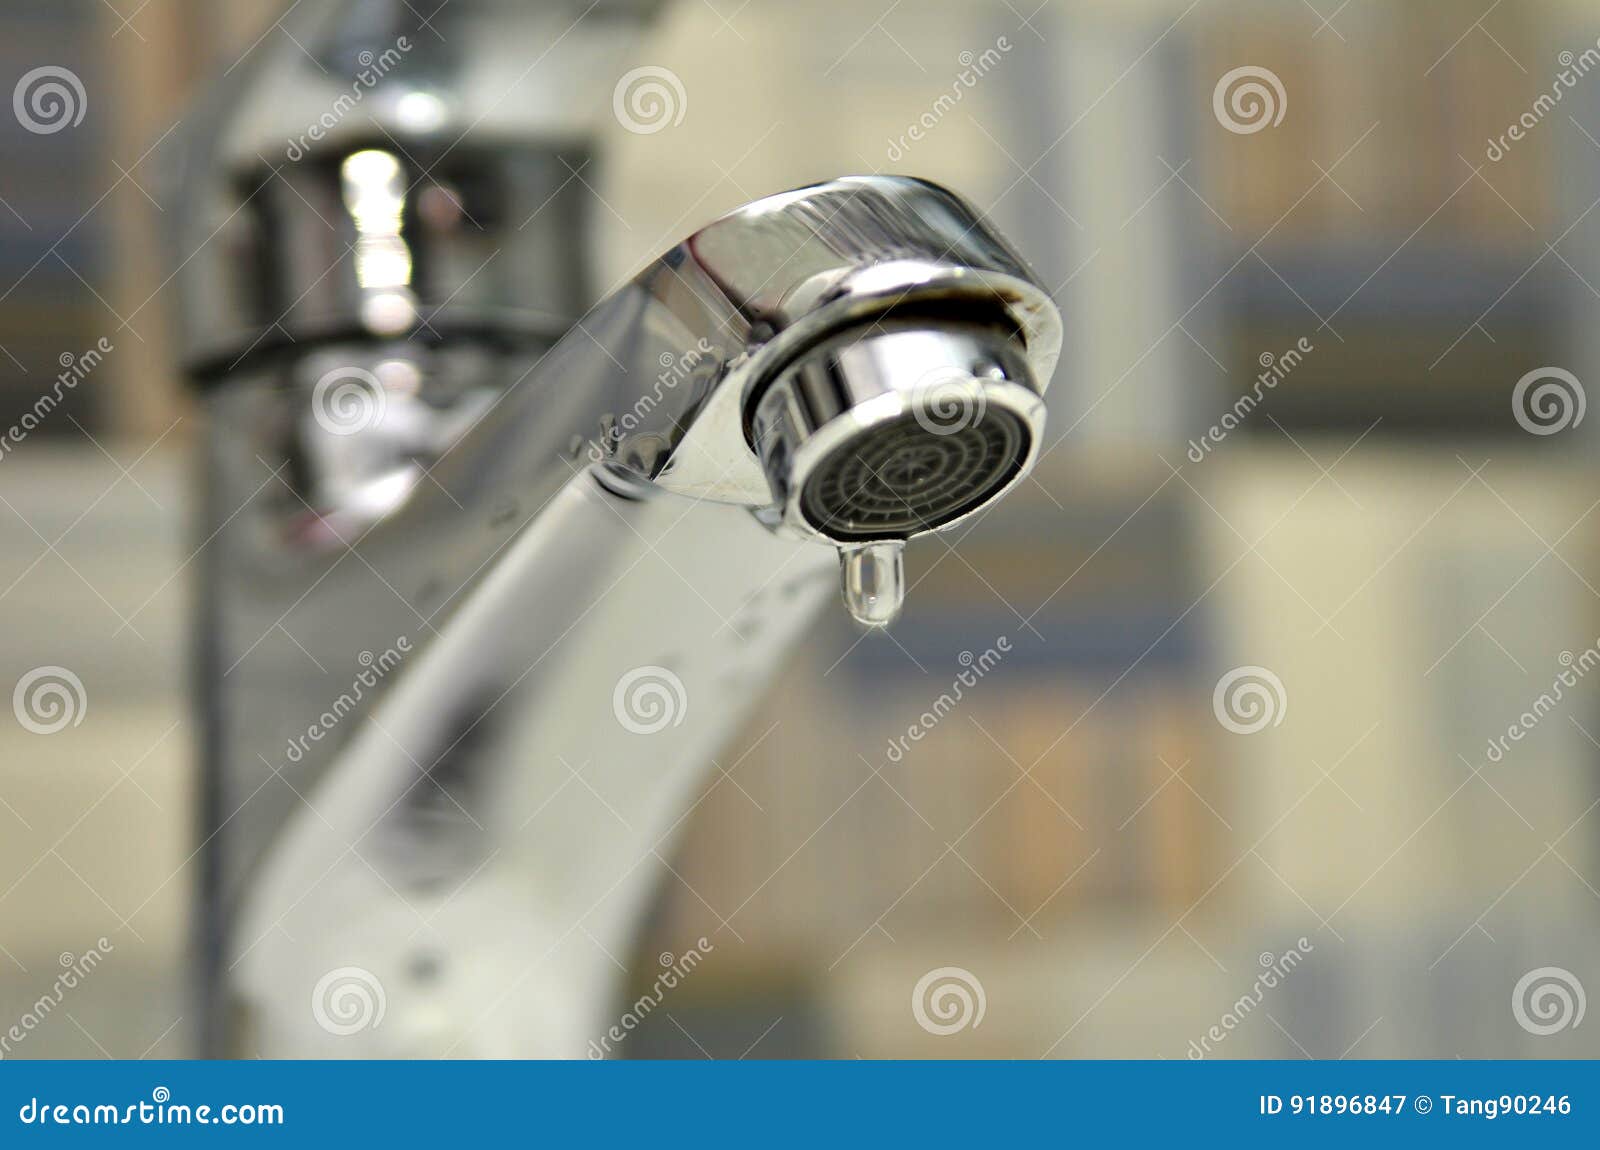 bathroom tap leaking water drops